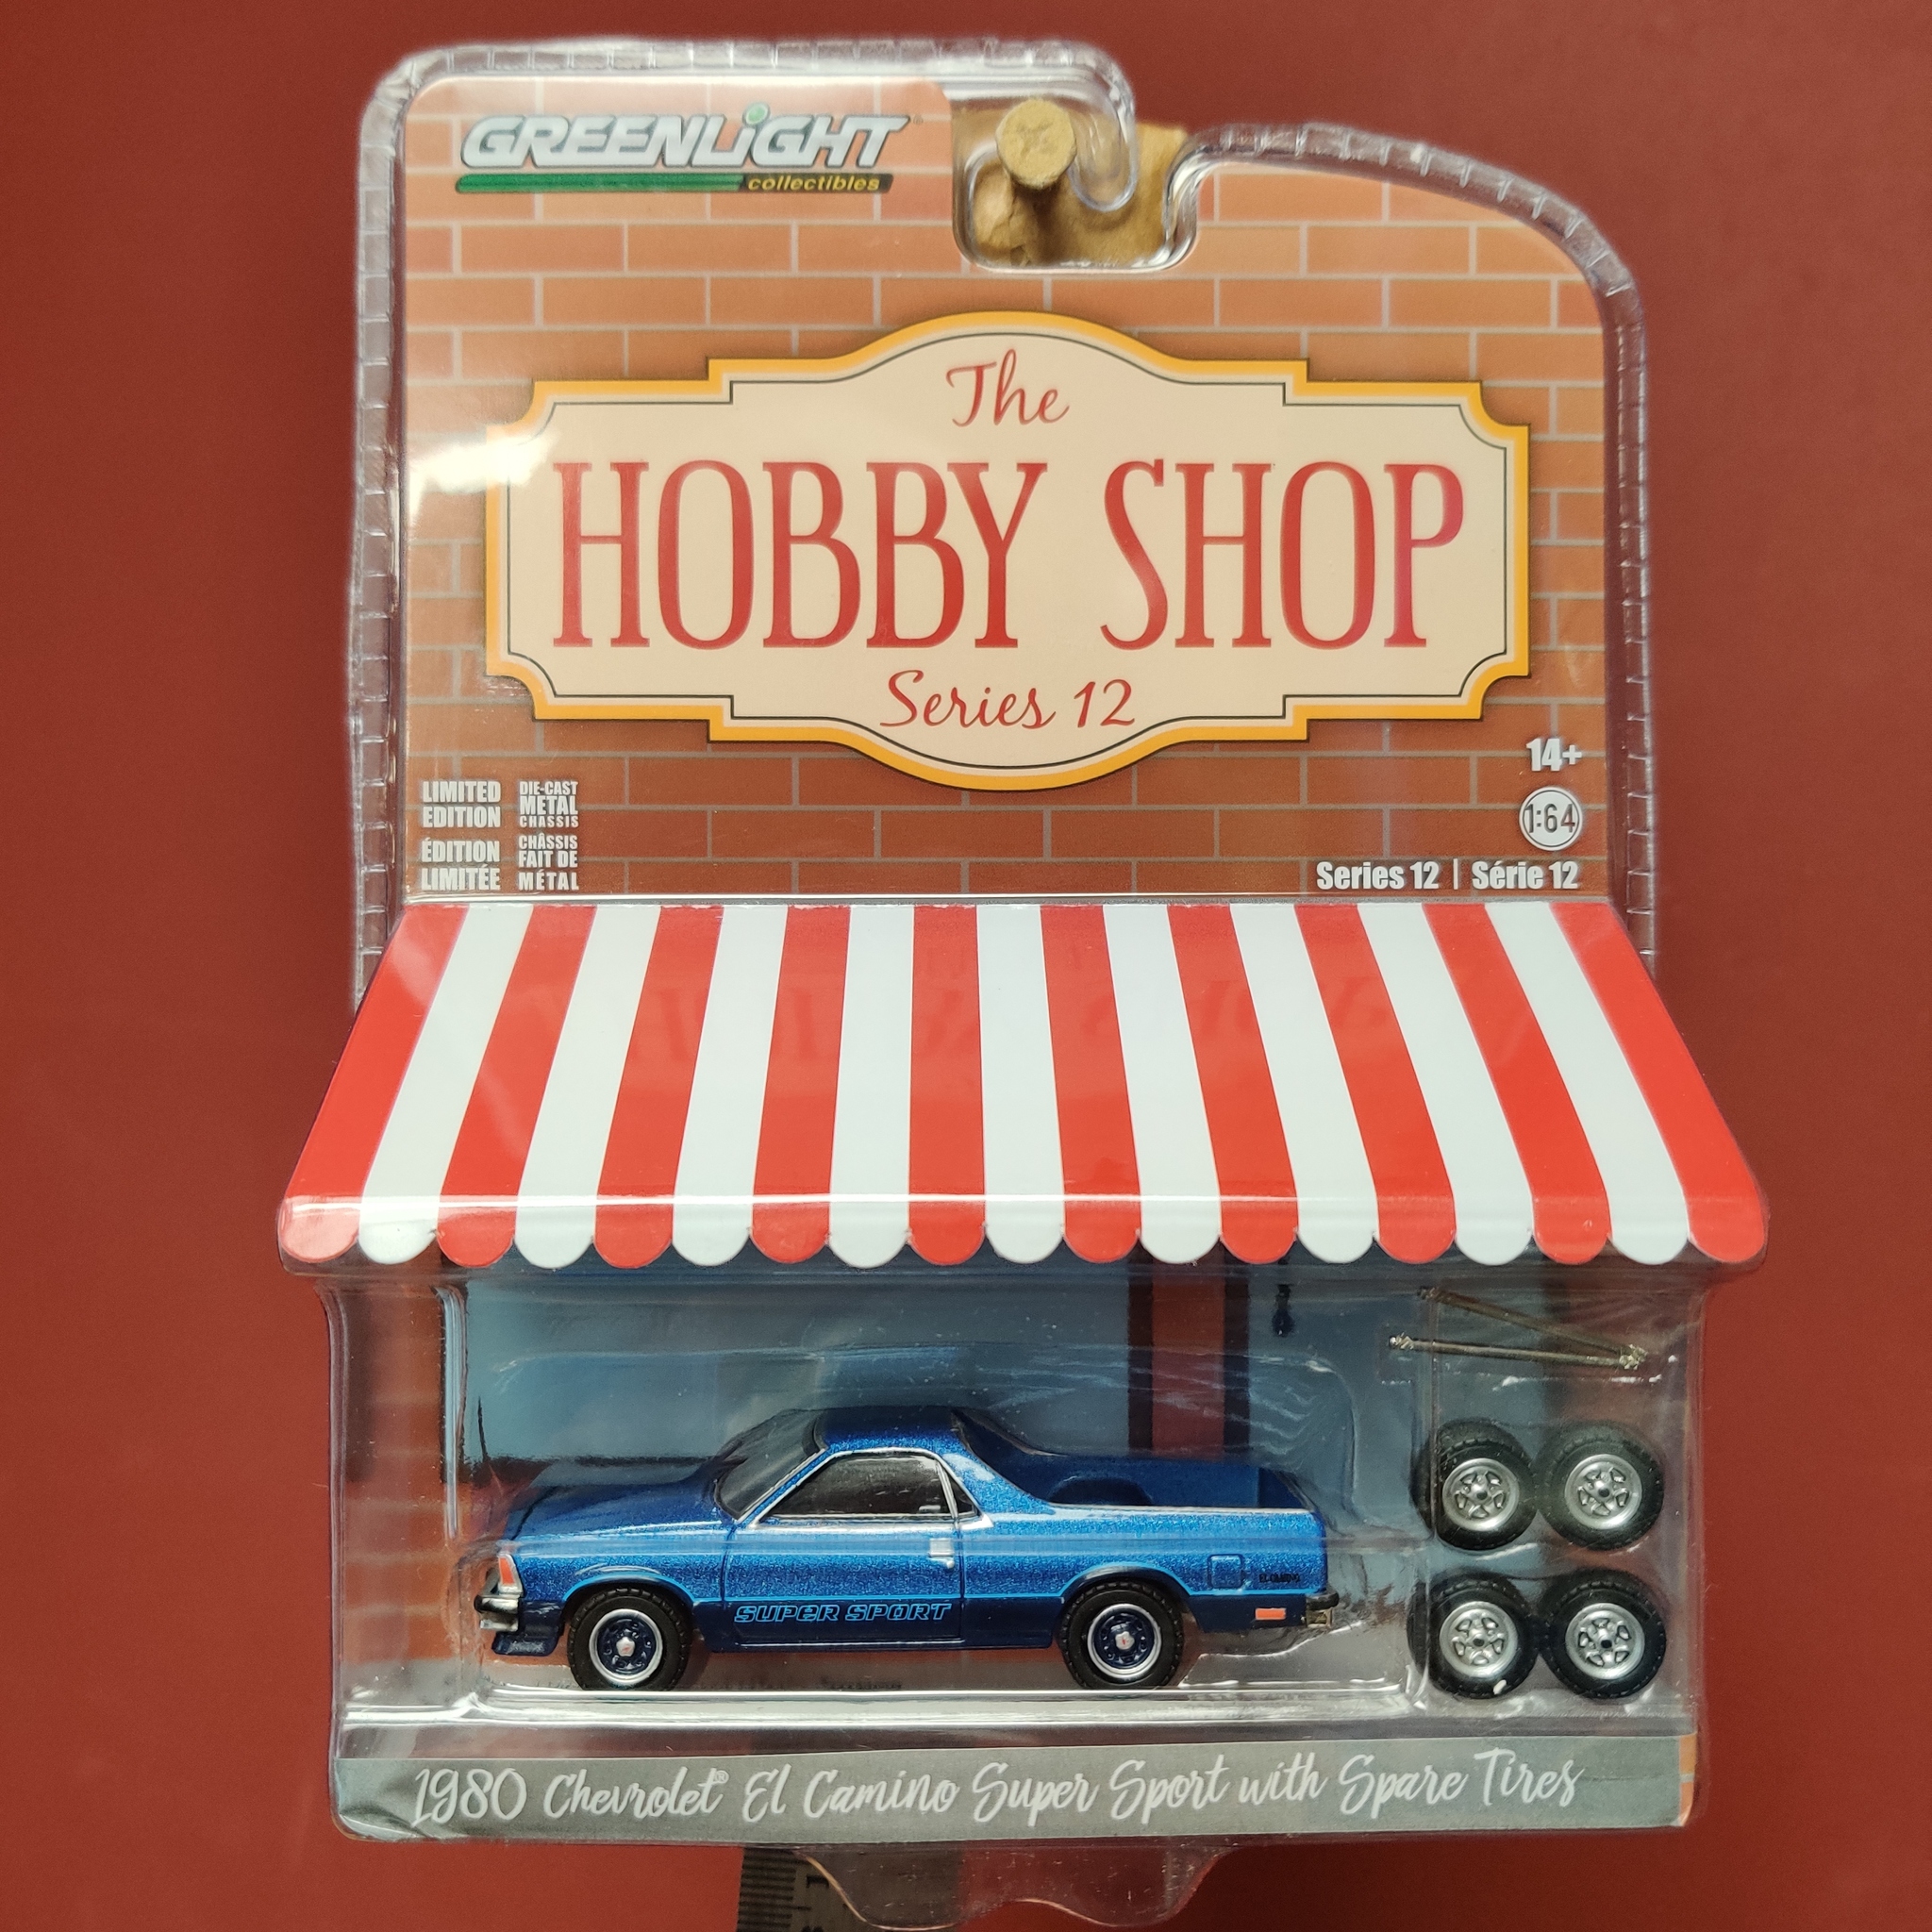 Skala 1/64 Chevrolet El Camino Super Sport "The hobby shop ser.12" från Greenlight